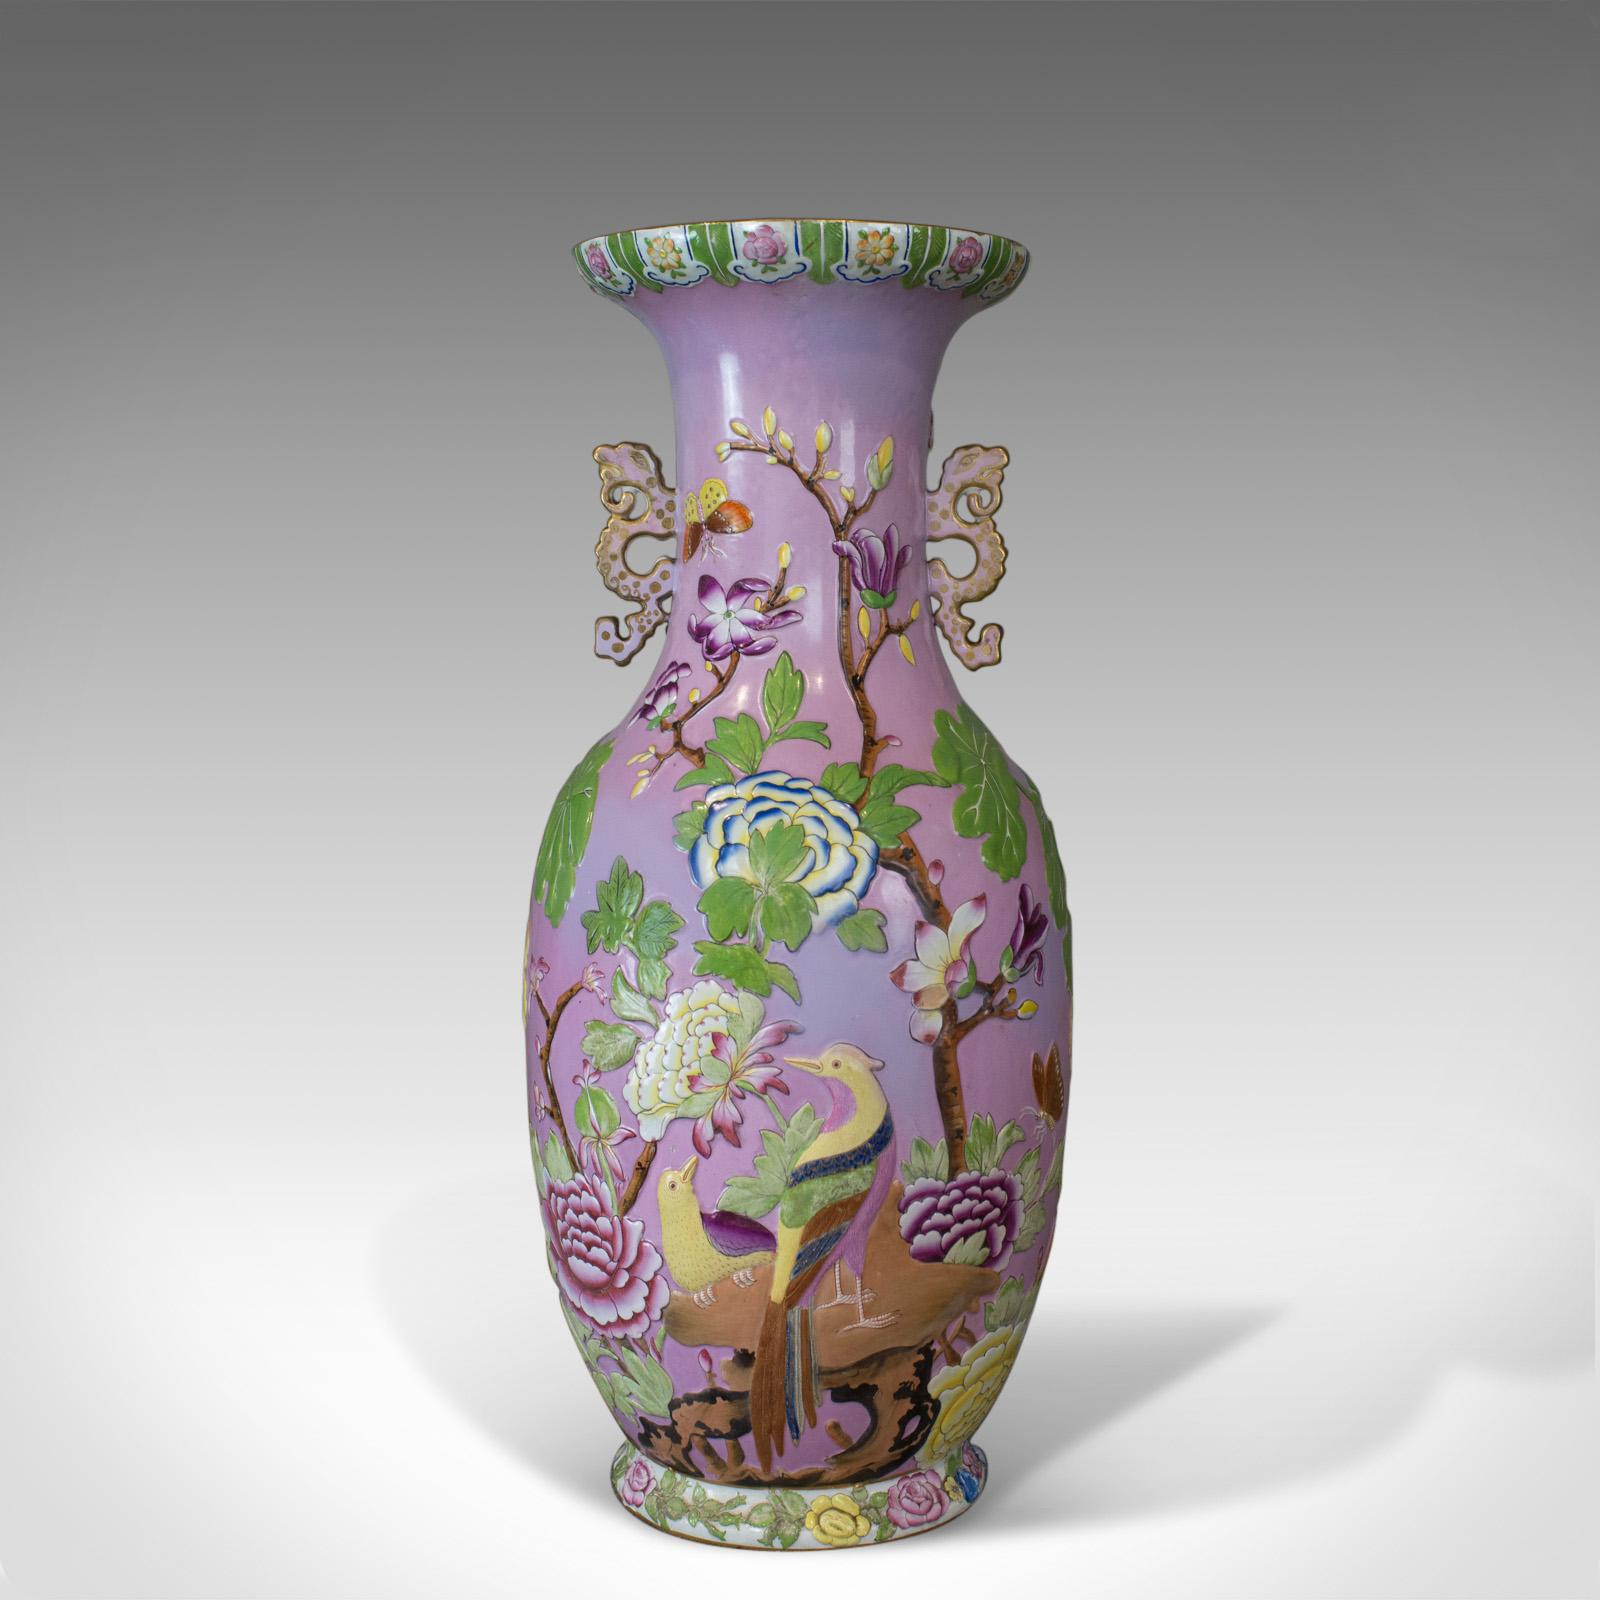 Chinese Export Large Vintage Baluster Vase, Oriental, Ceramic, Urn, Birds, Floral Foliate